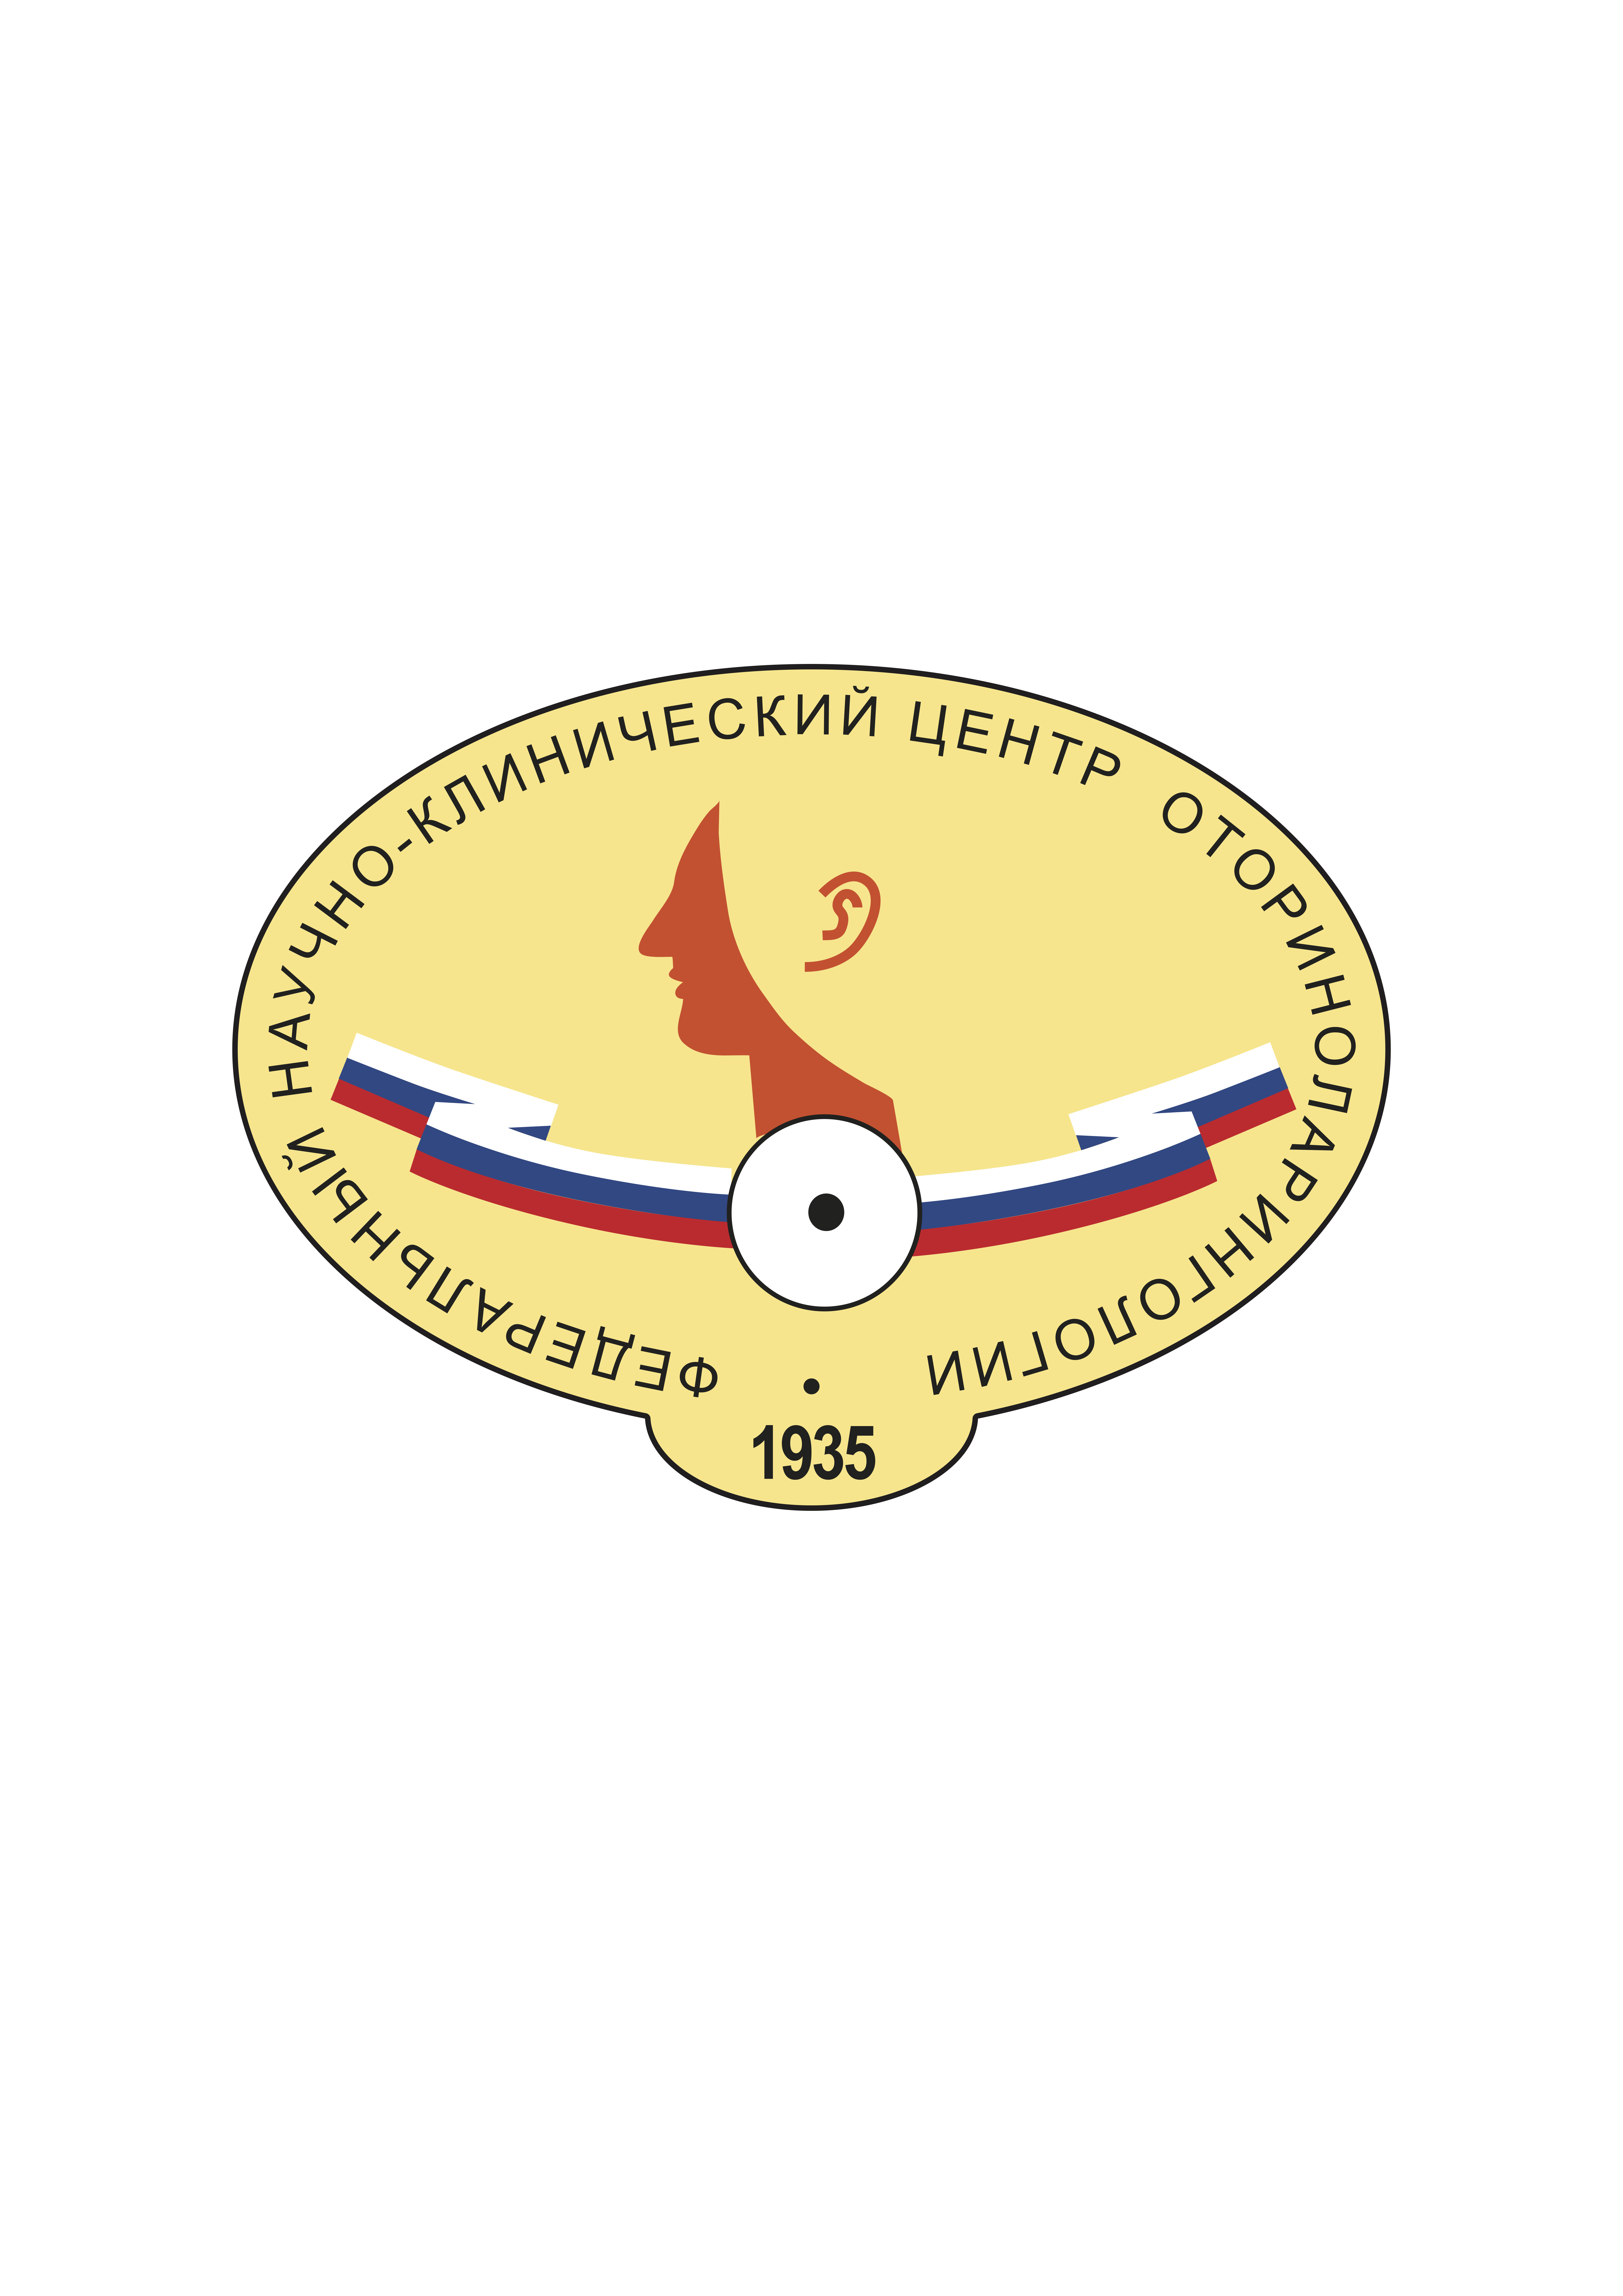 ФГБУ Научно-клинический центр оториноларингологии ФМБА России